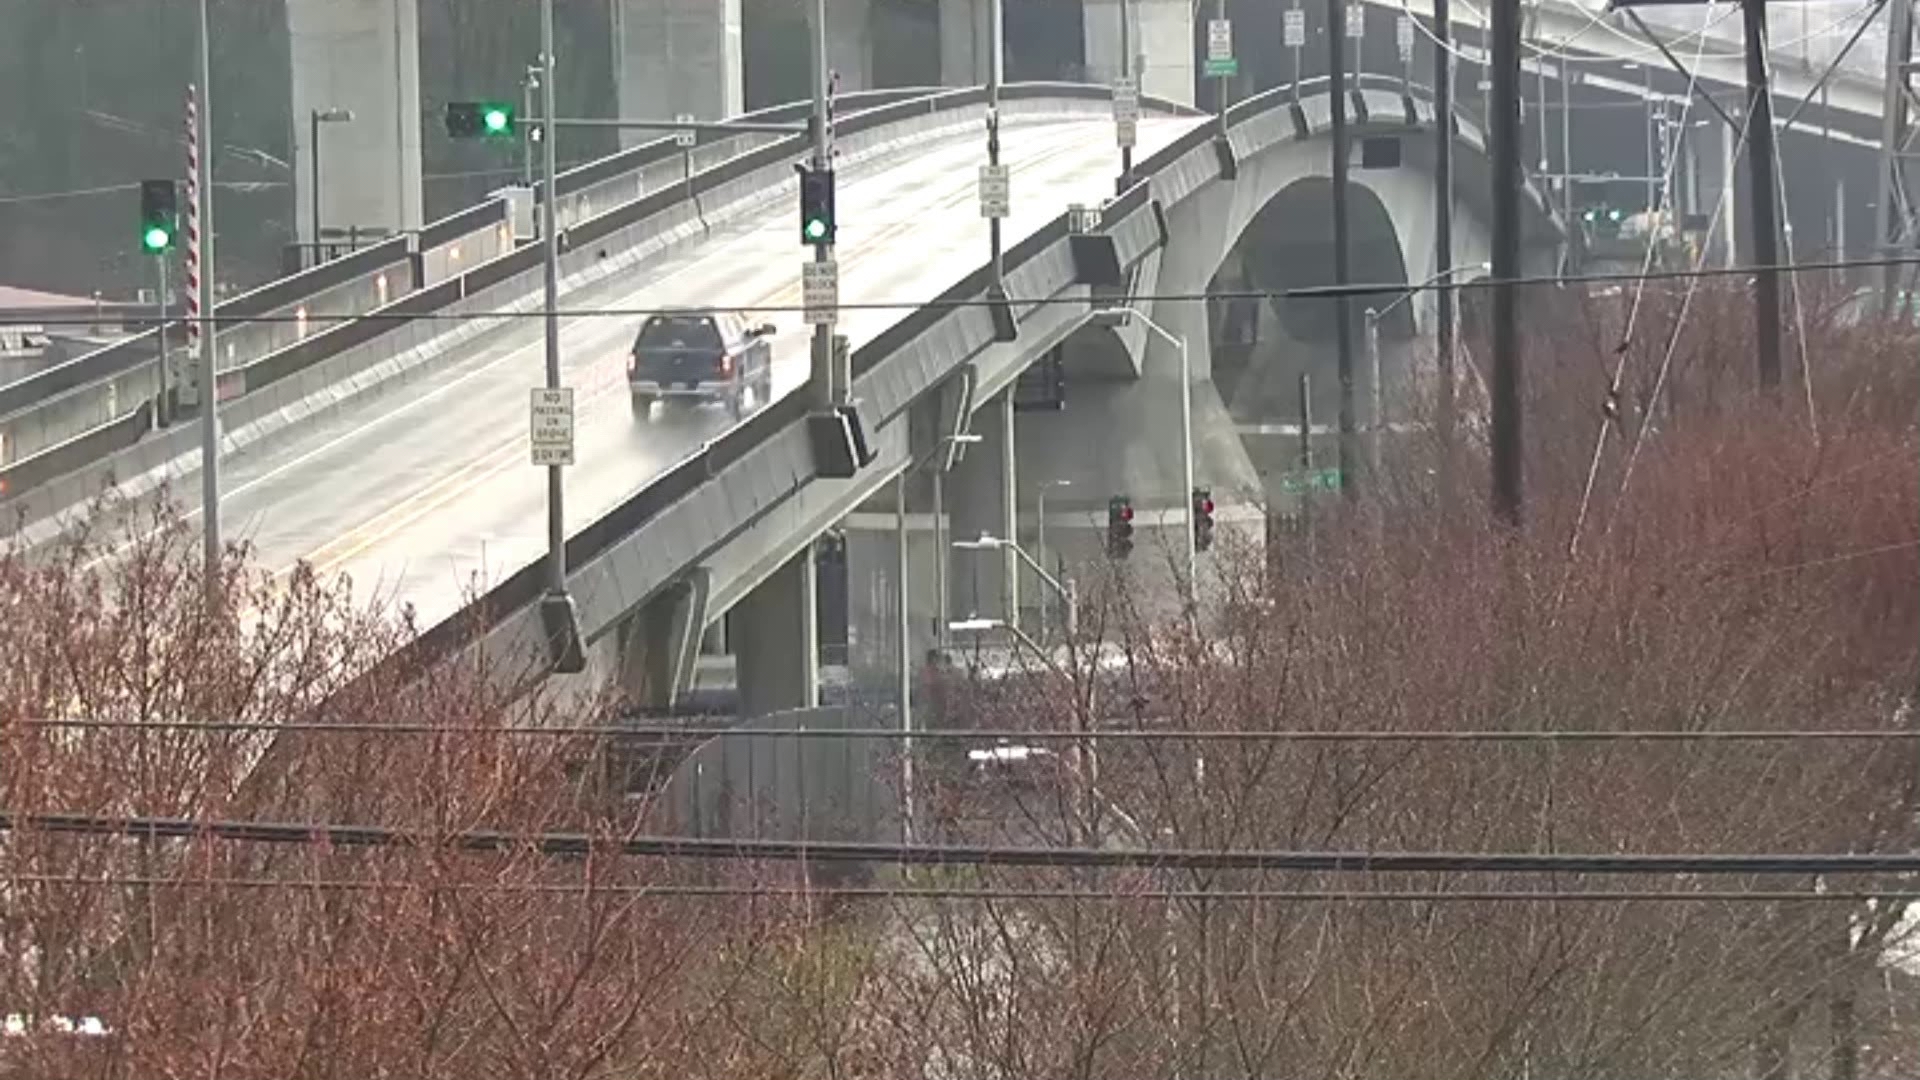 Spokane Street Bridge in Seattle reopens after 3-week closure